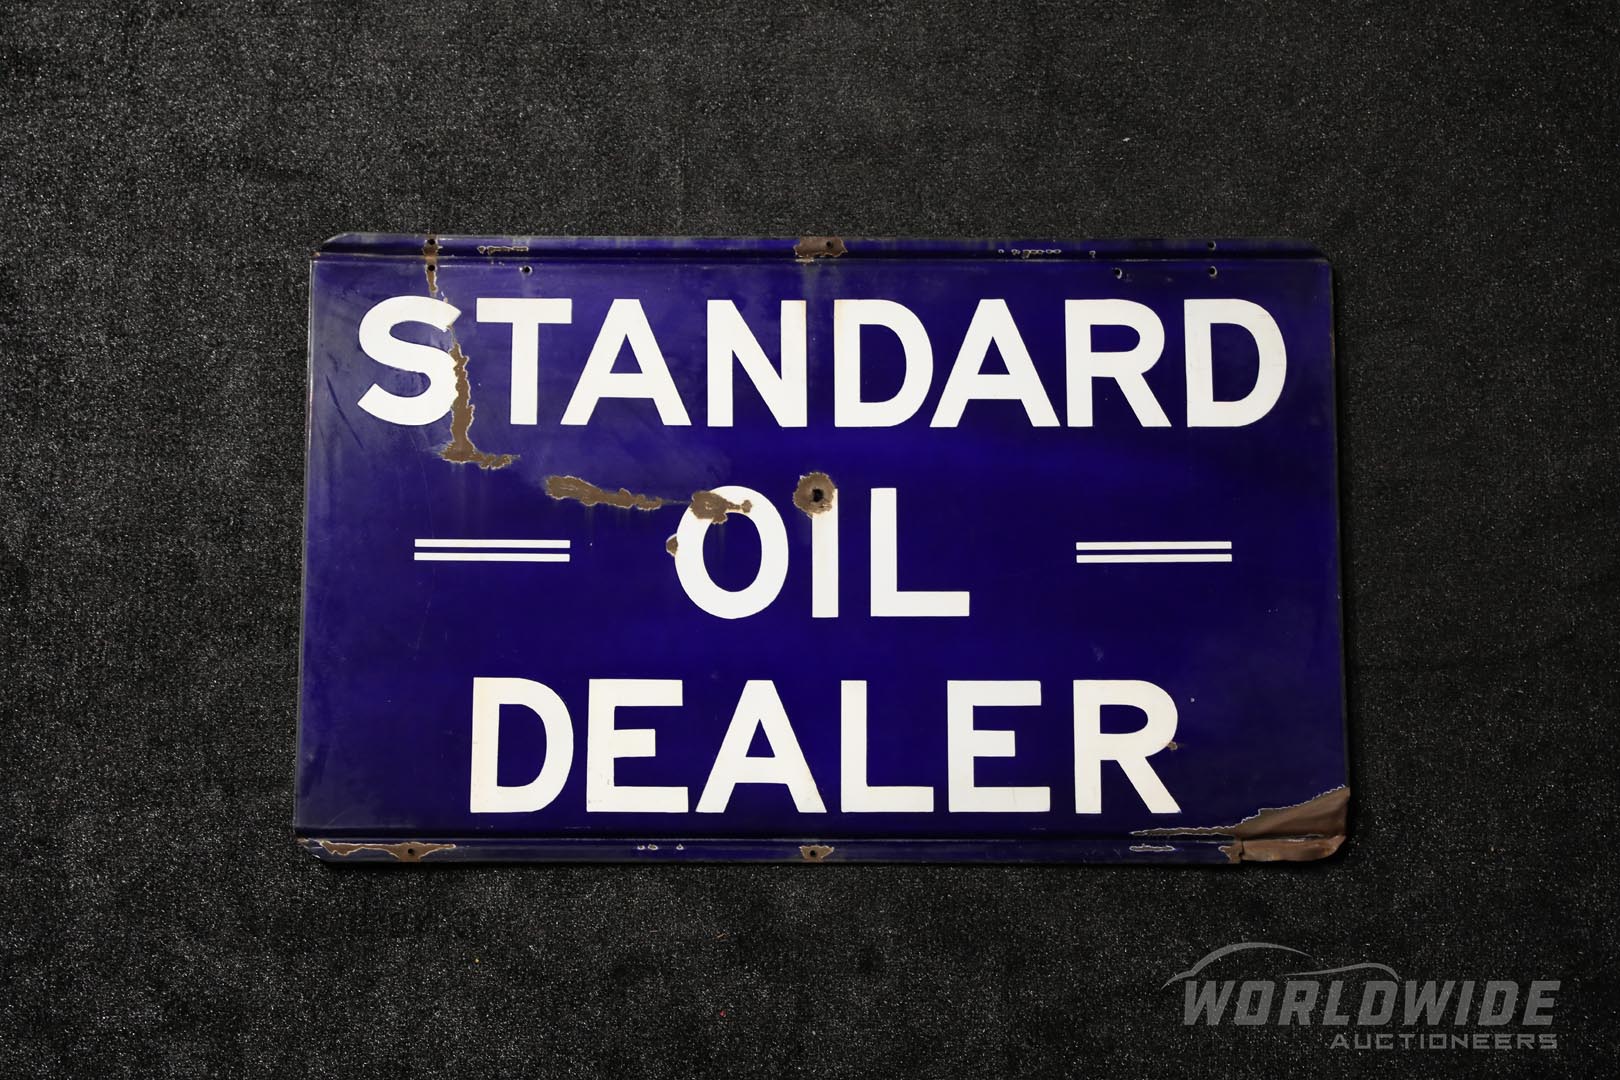  Original Standard Oil Dealer D ouble-Sided Porcelain Sign 